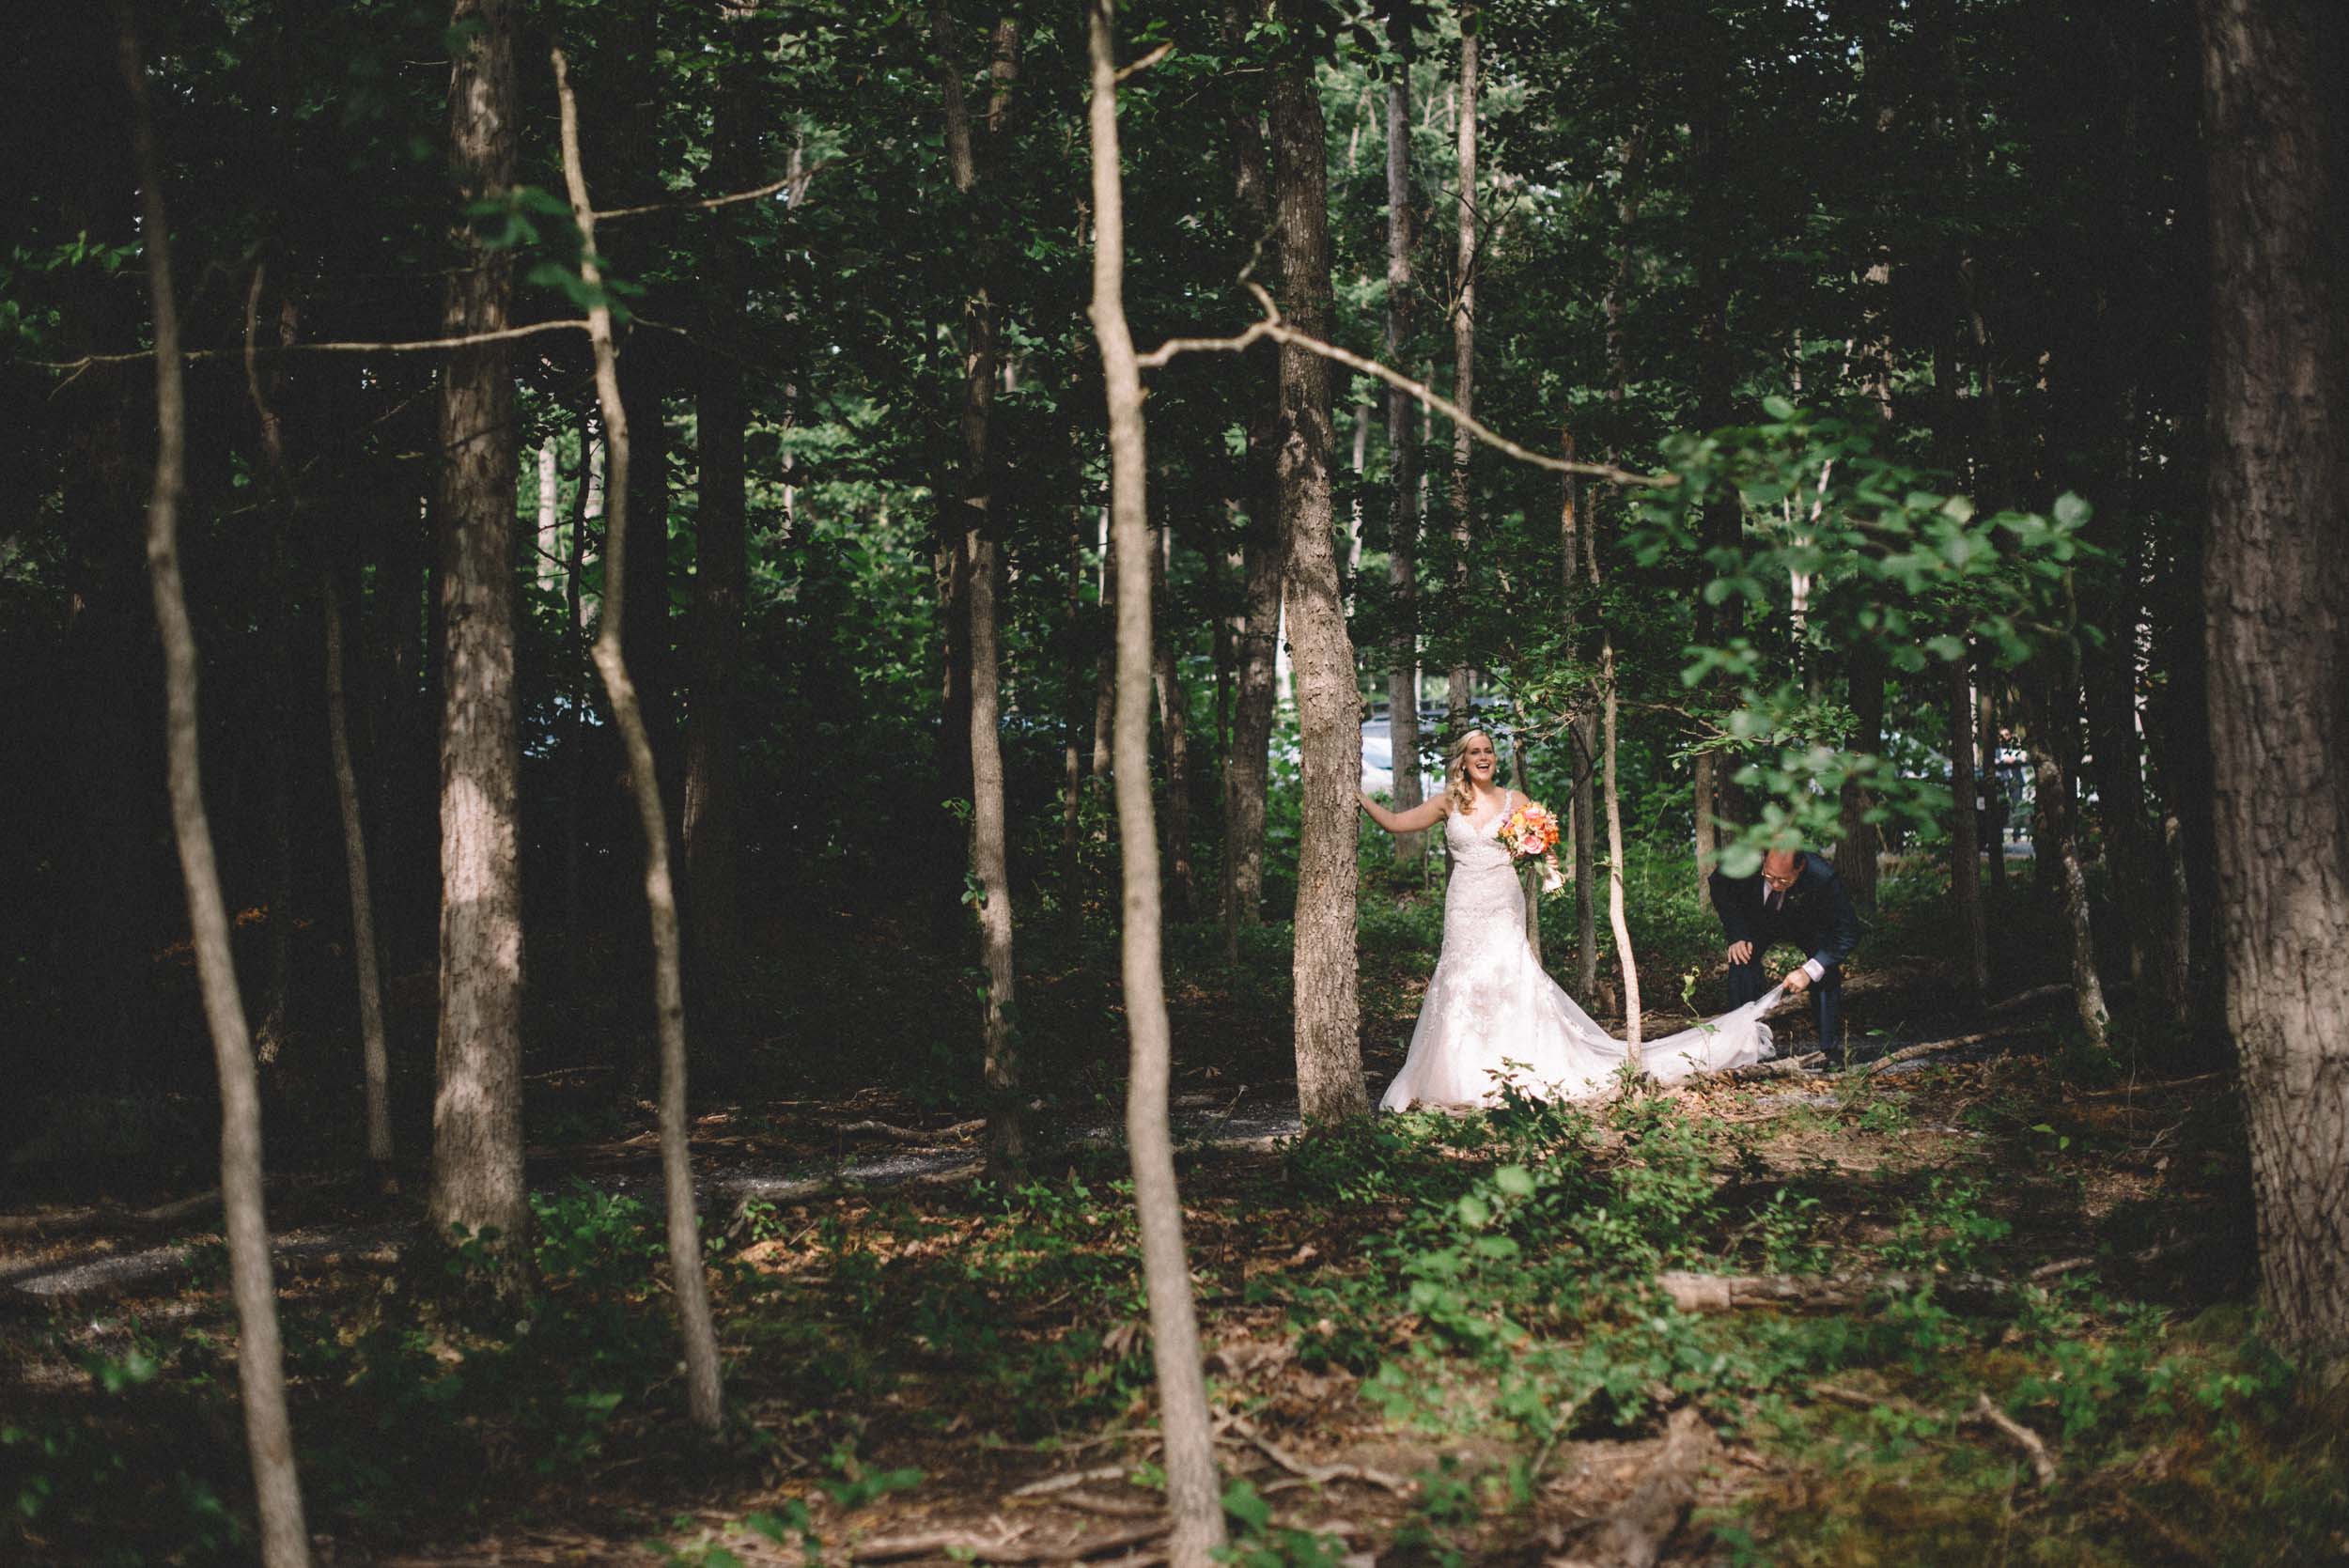 Wedding ceremony at Shenandoah Woods